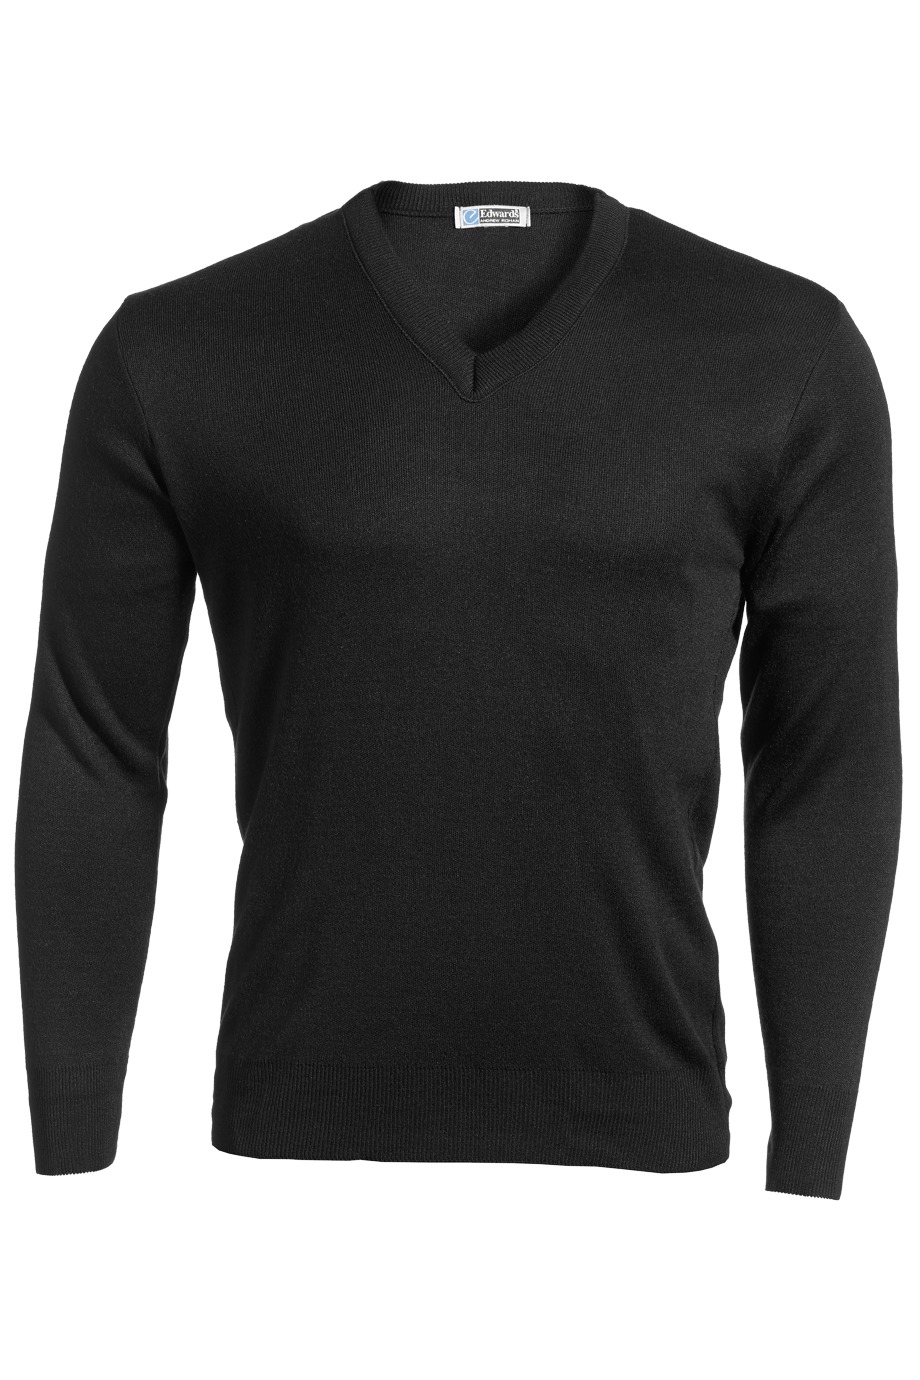 Edwards Garment 265 - Value V-Neck Acrylic Sweater